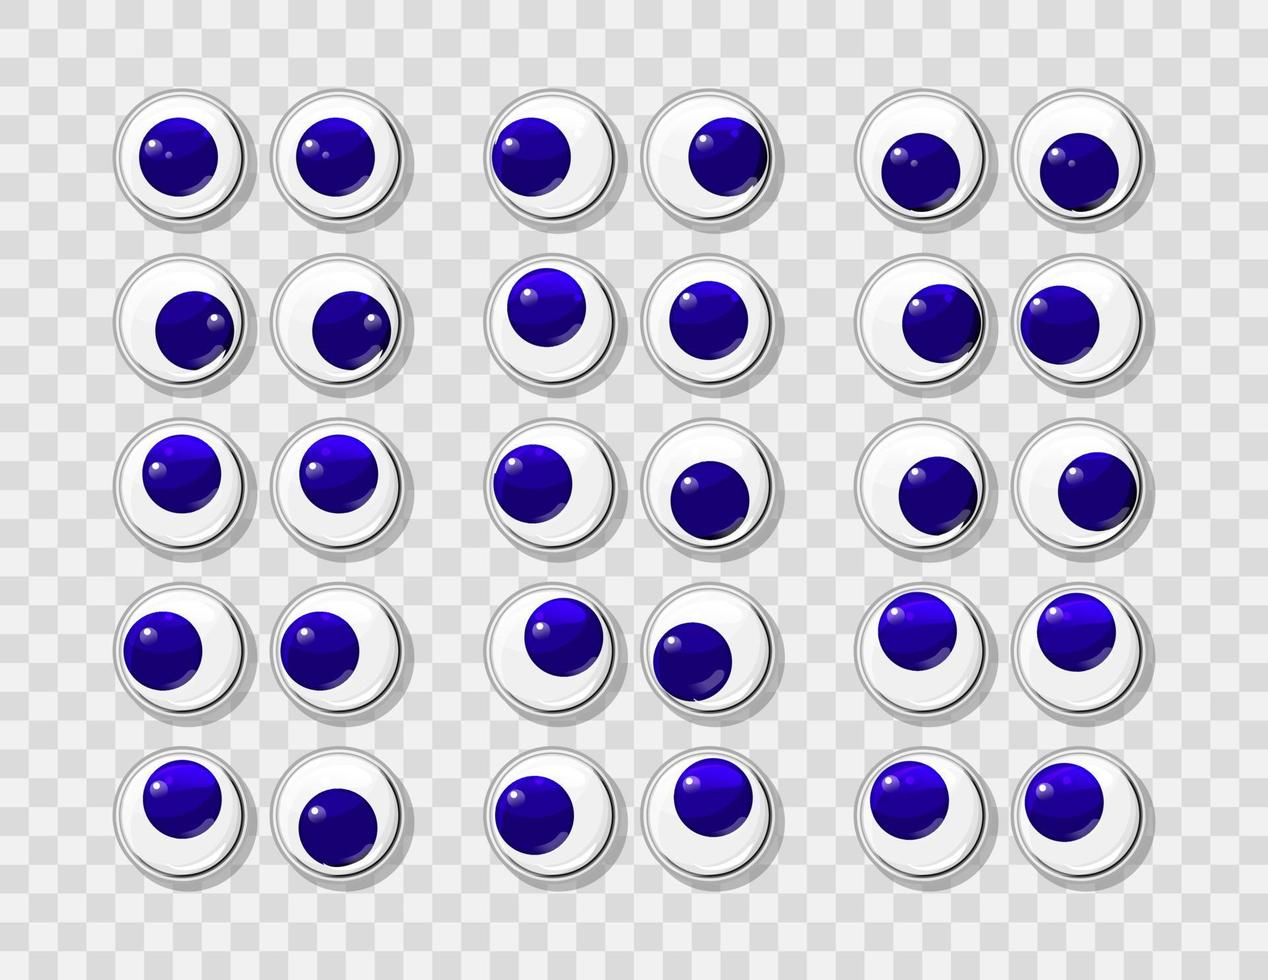 Ojos de plástico divertidos azules para juguetes, marionetas y muñecas.  conjunto de vectores grandes de globos oculares redondos y coloridos.  dibujos animados diseño artesanal y elementos de diseño de costura.  13338026 Vector